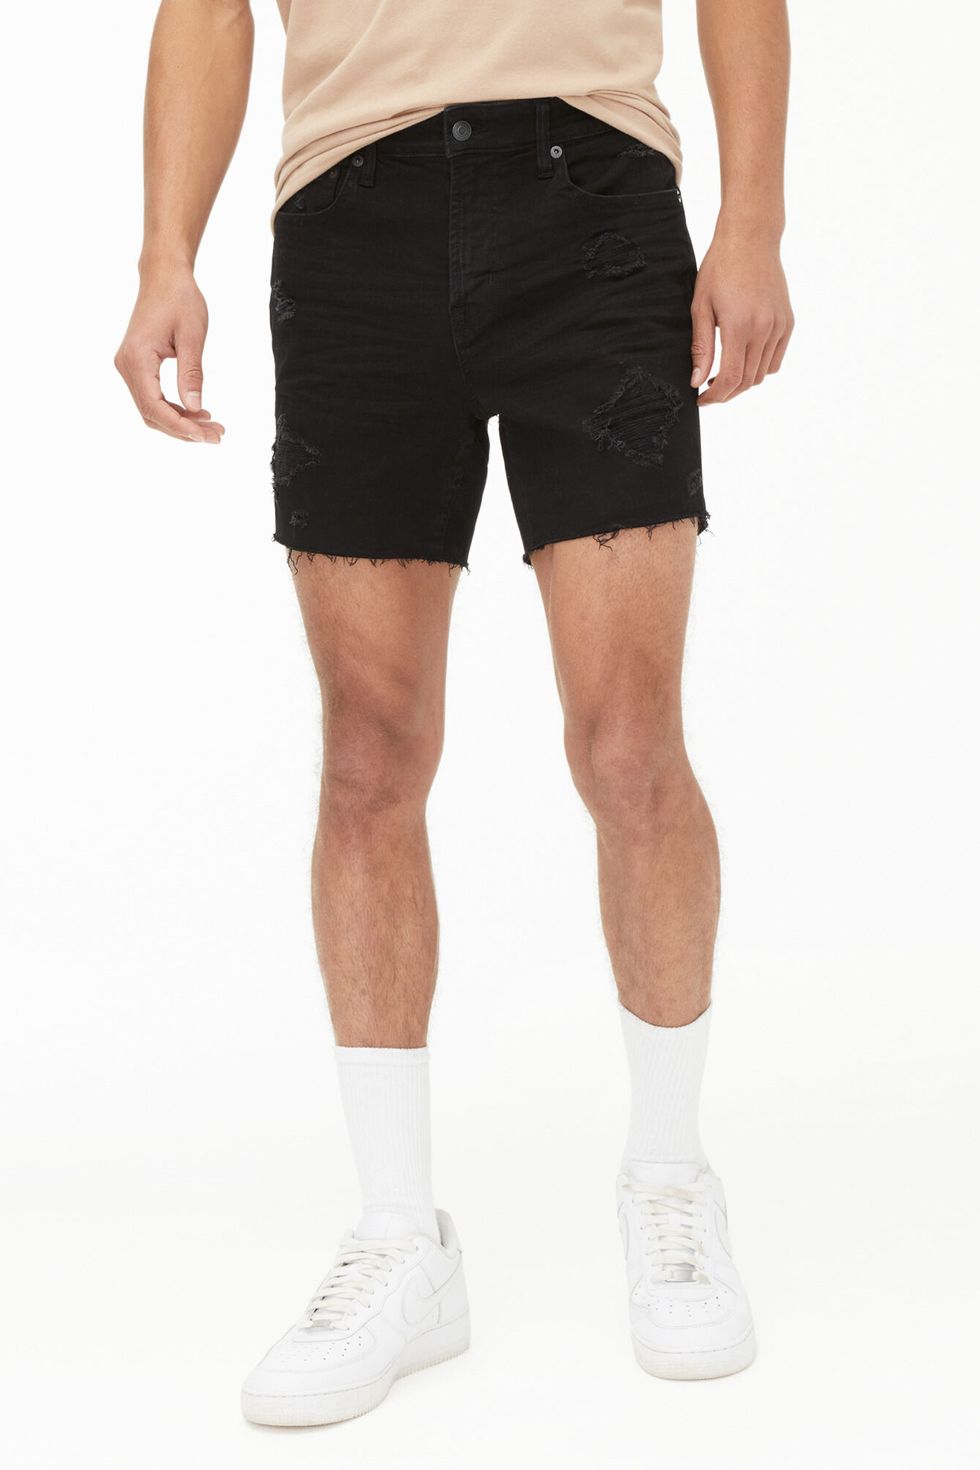 Premium Air Slim Denim Shorts 5.5"